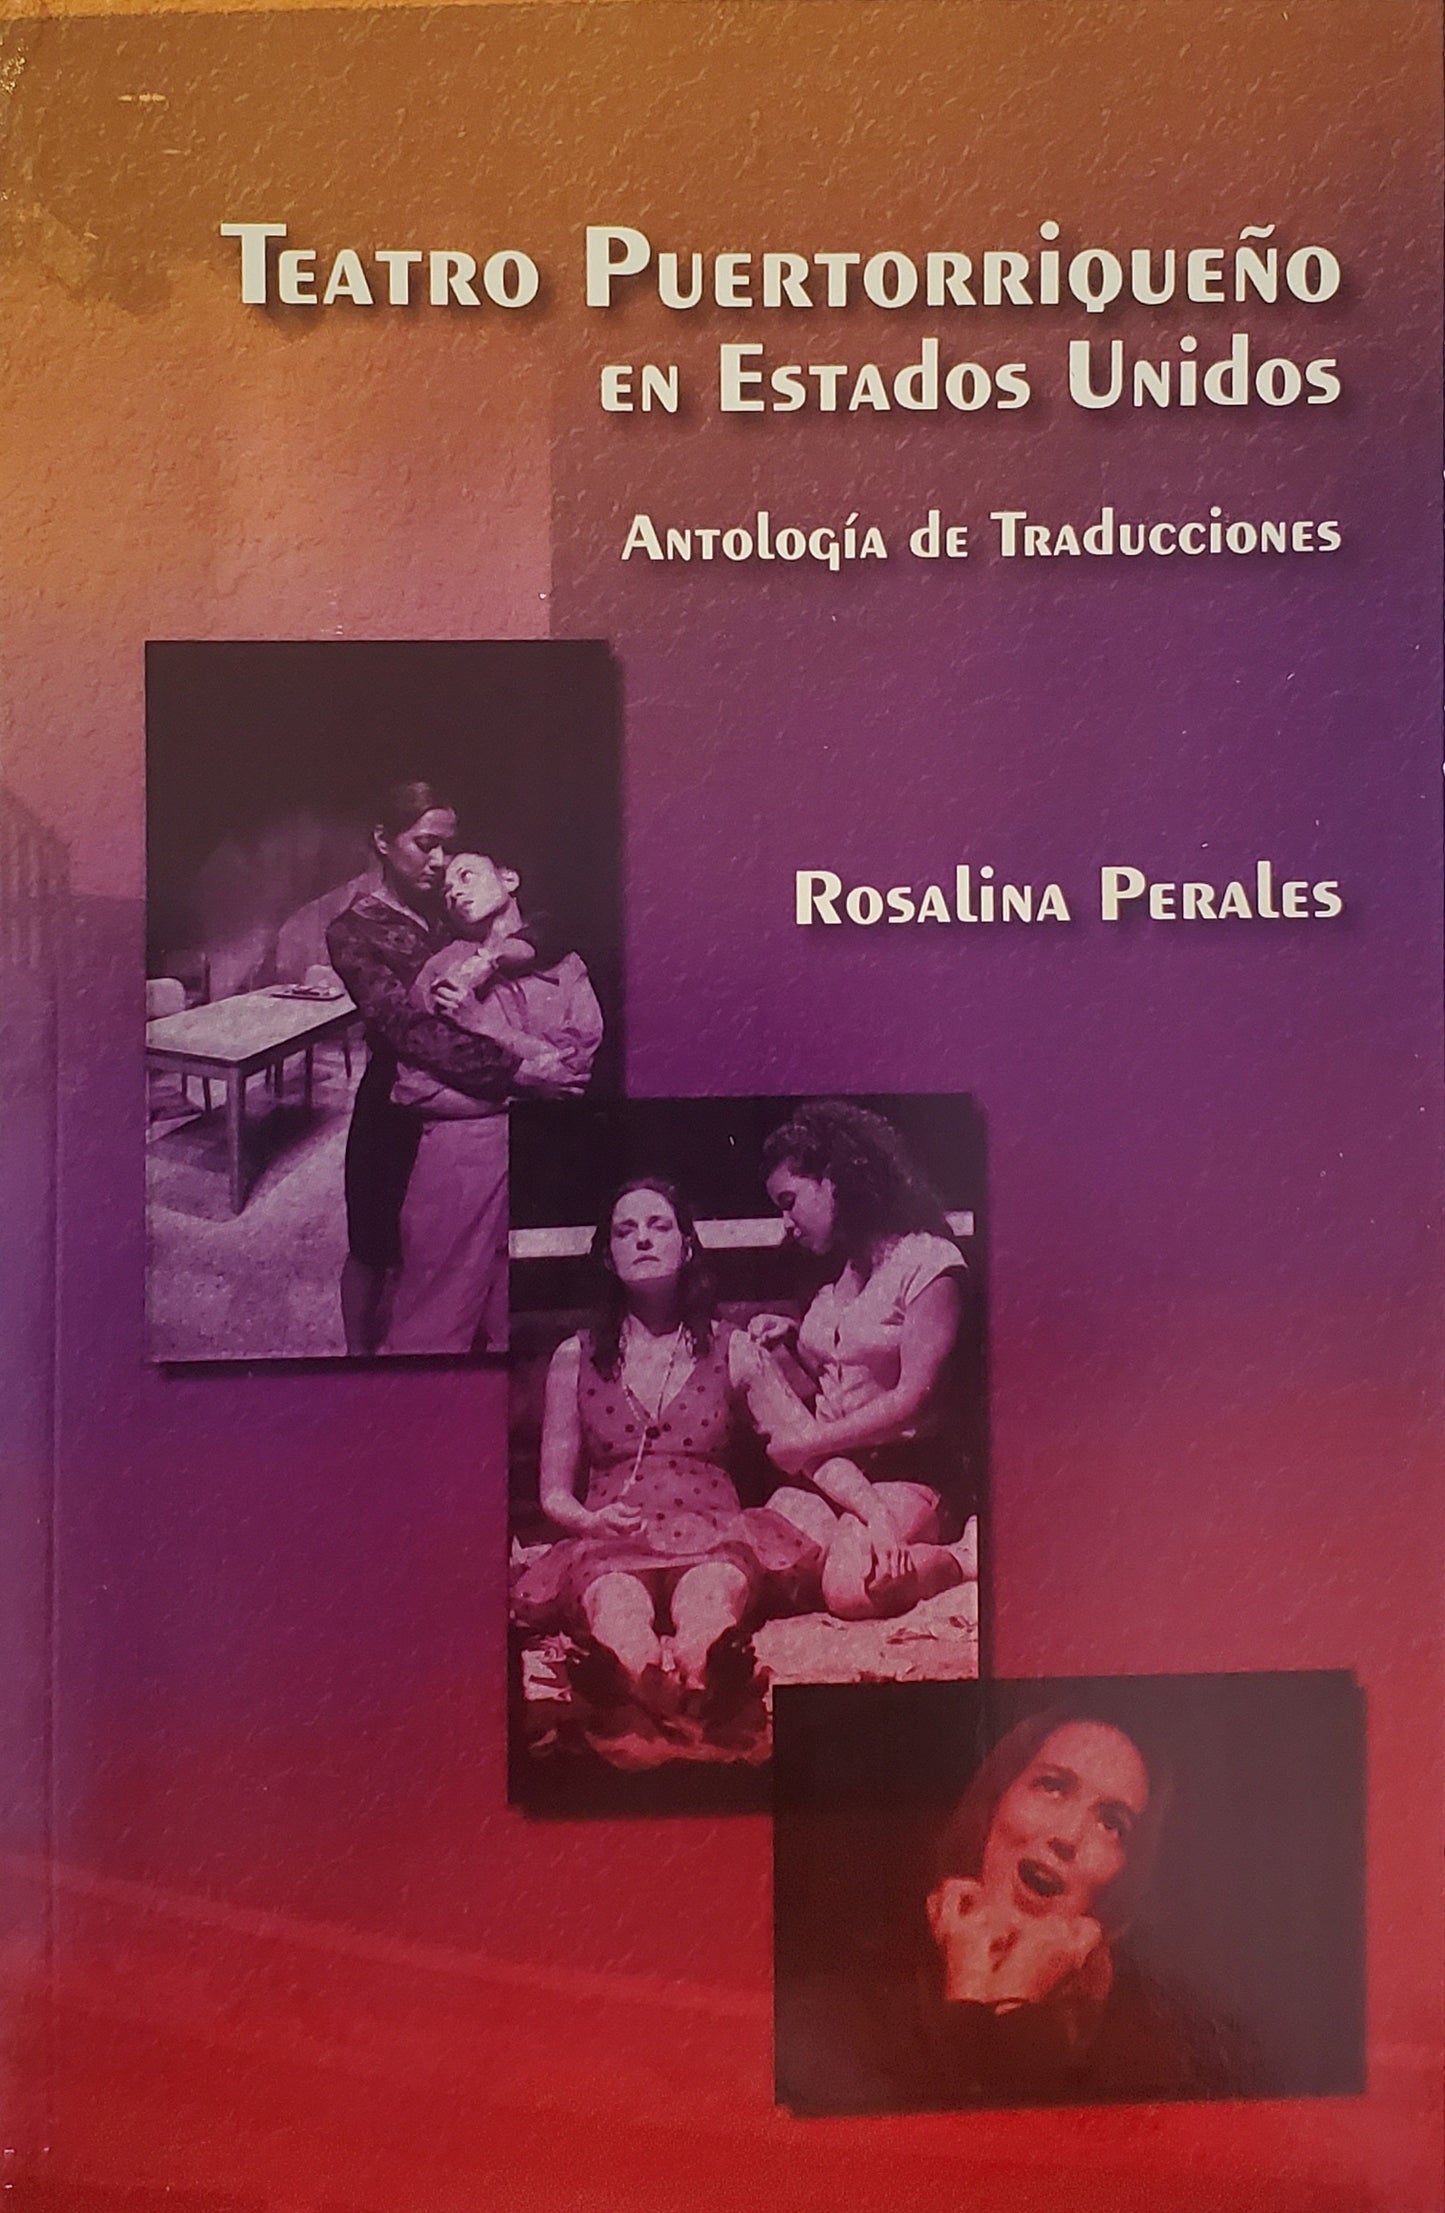 Teatro Puertorriqueño en Estados Unidos - Rosalina Perales